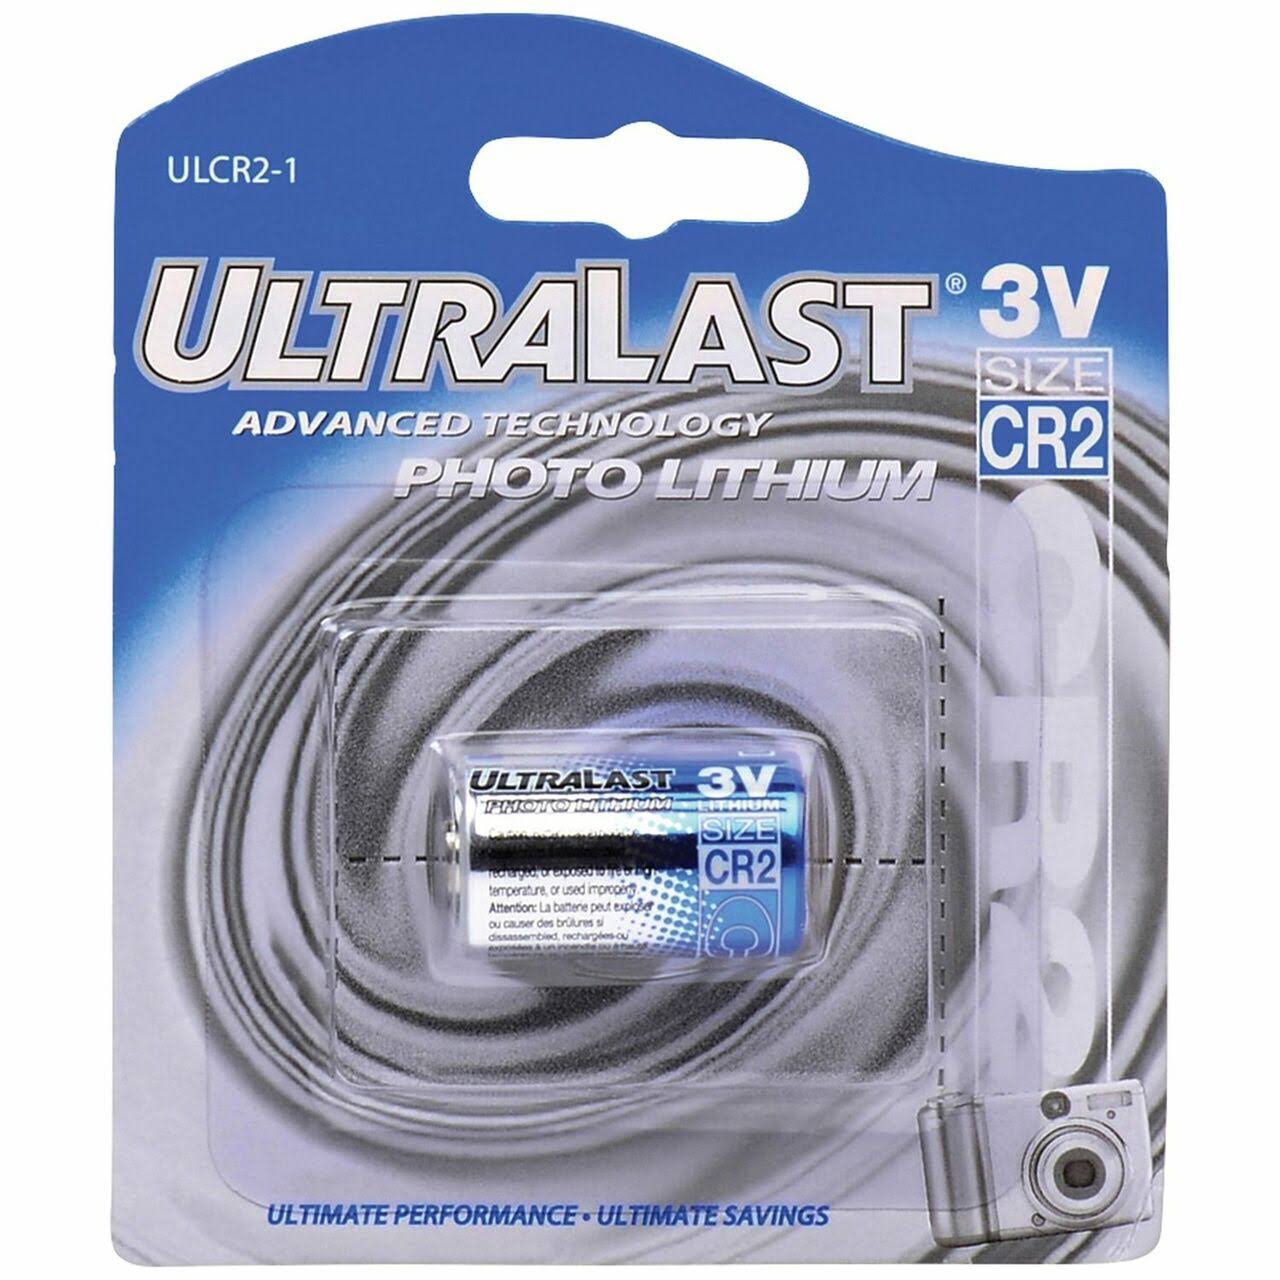 Ultralast Photo Lithium Batteries - CR2, 3V